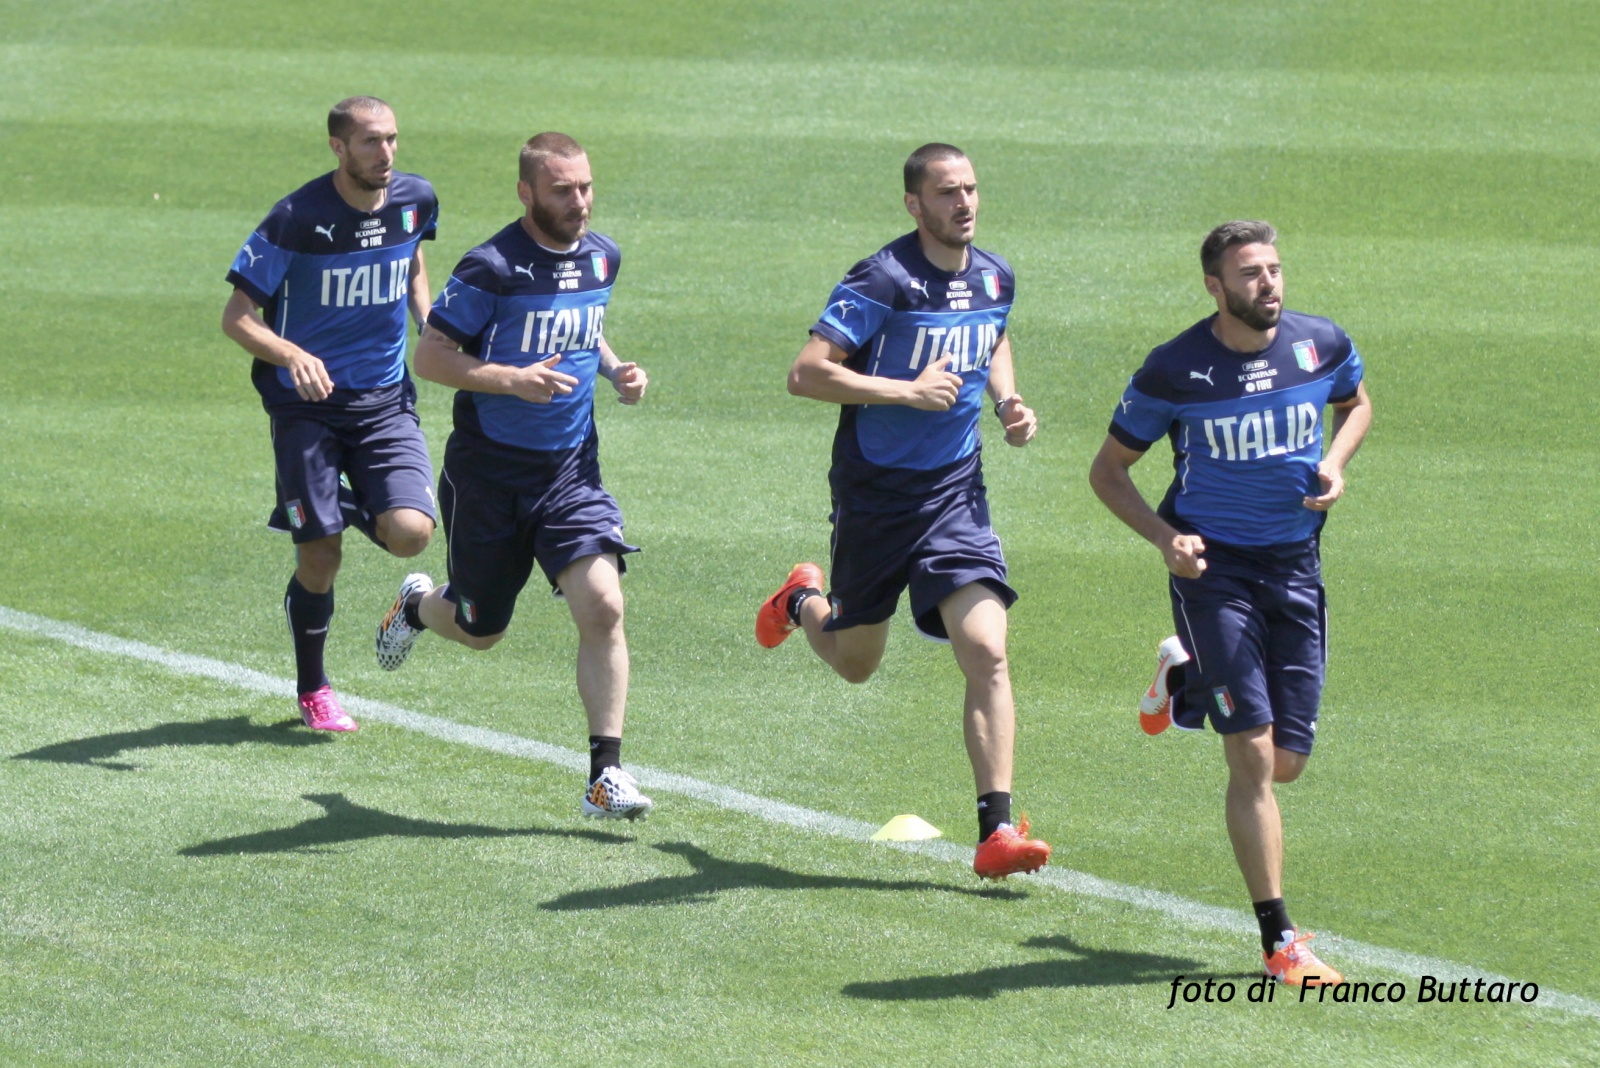 Calcio - Italia - Ritiro pre-mondiale 2014